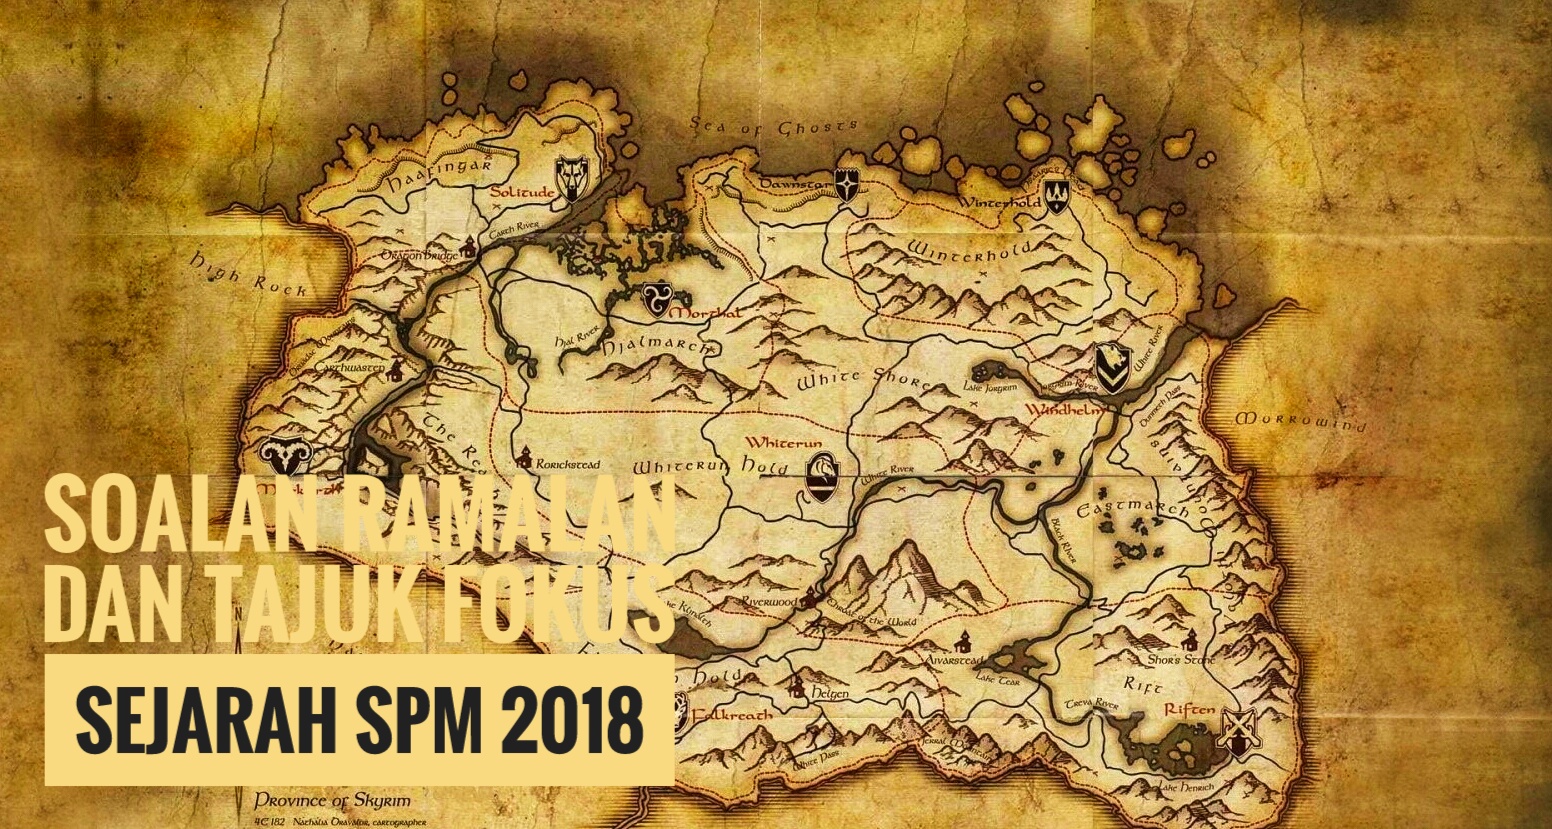 Soalan Ramalan dan Tajuk Fokus Sejarah SPM 2018 - Peperiksaan